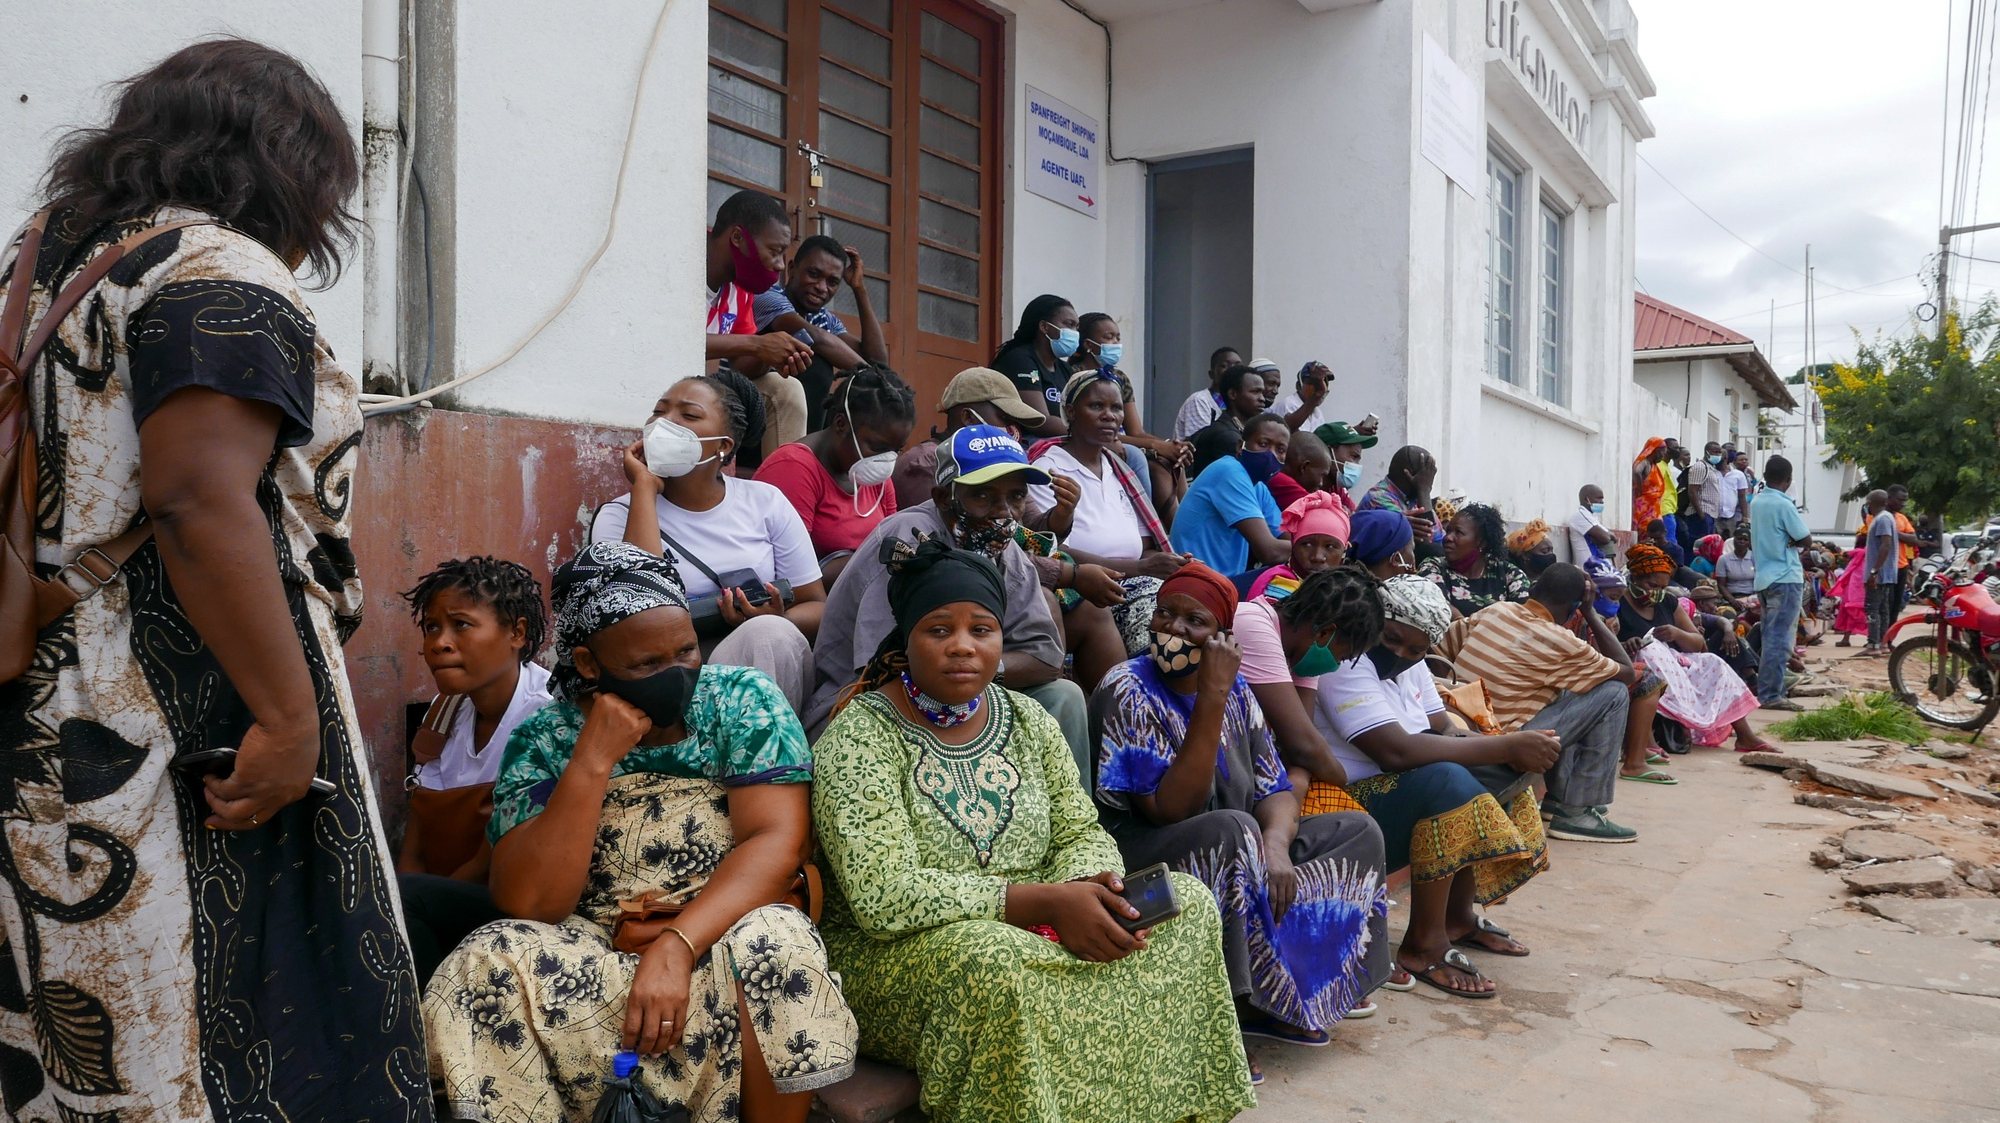 Dezenas de pessoas aguardam pela chegada de mais navios oriundos do distrito de Palma, com população que foge aos ataques de grupos rebeldes desde quarta-feira, em Pemba, Moçambique, 29 de março de 2021. LUÍS MIGUEL FONSECA/LUSA